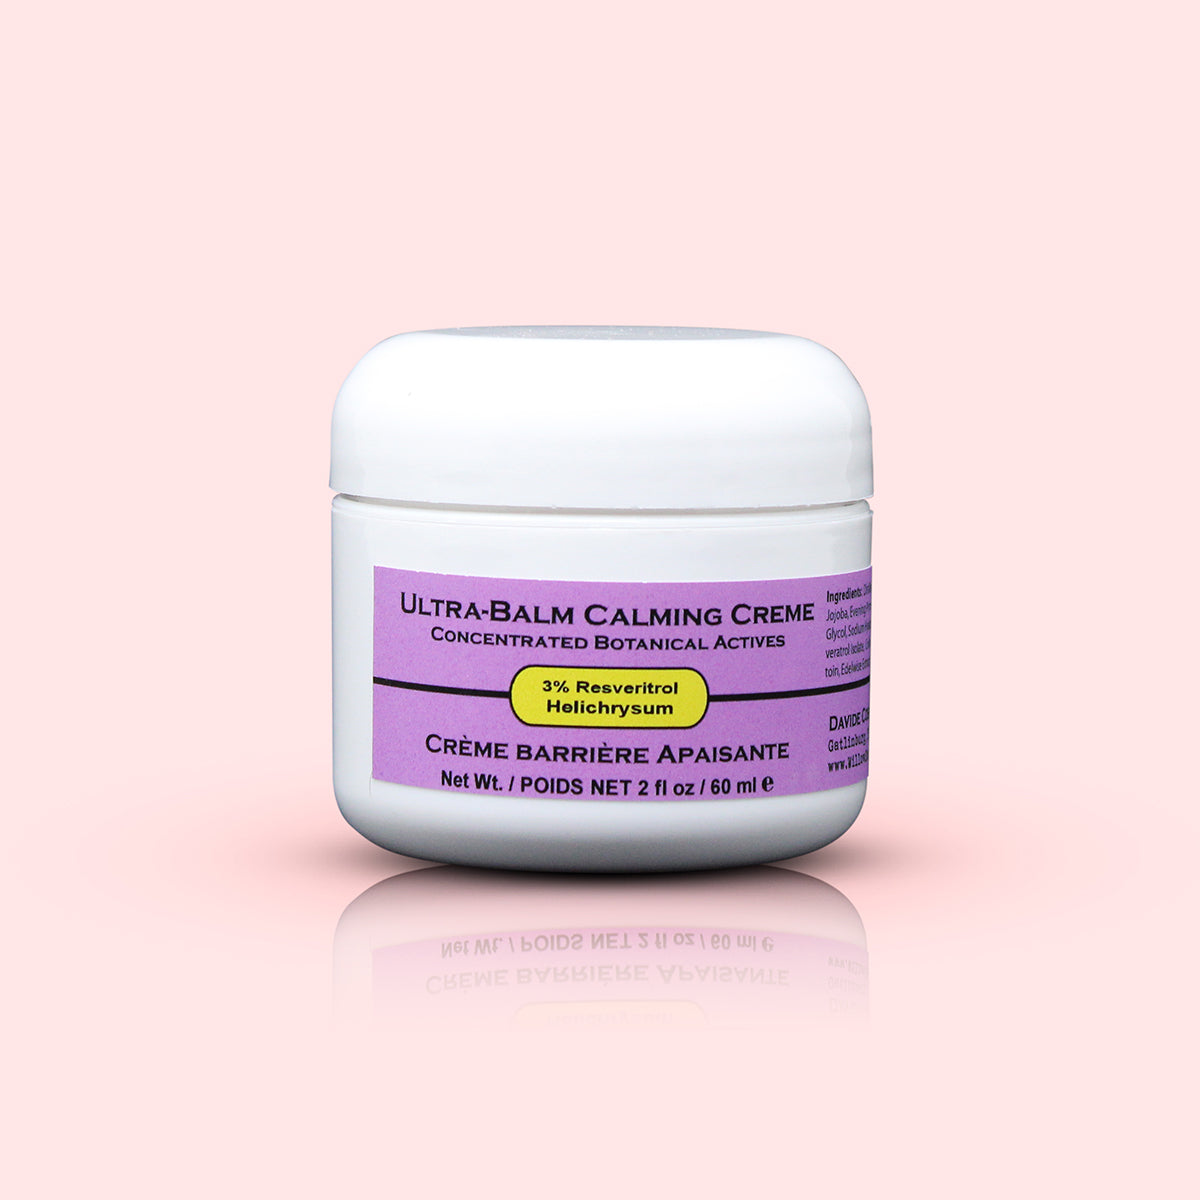 Ultra Balm Calming Creme 3% Resveratrol